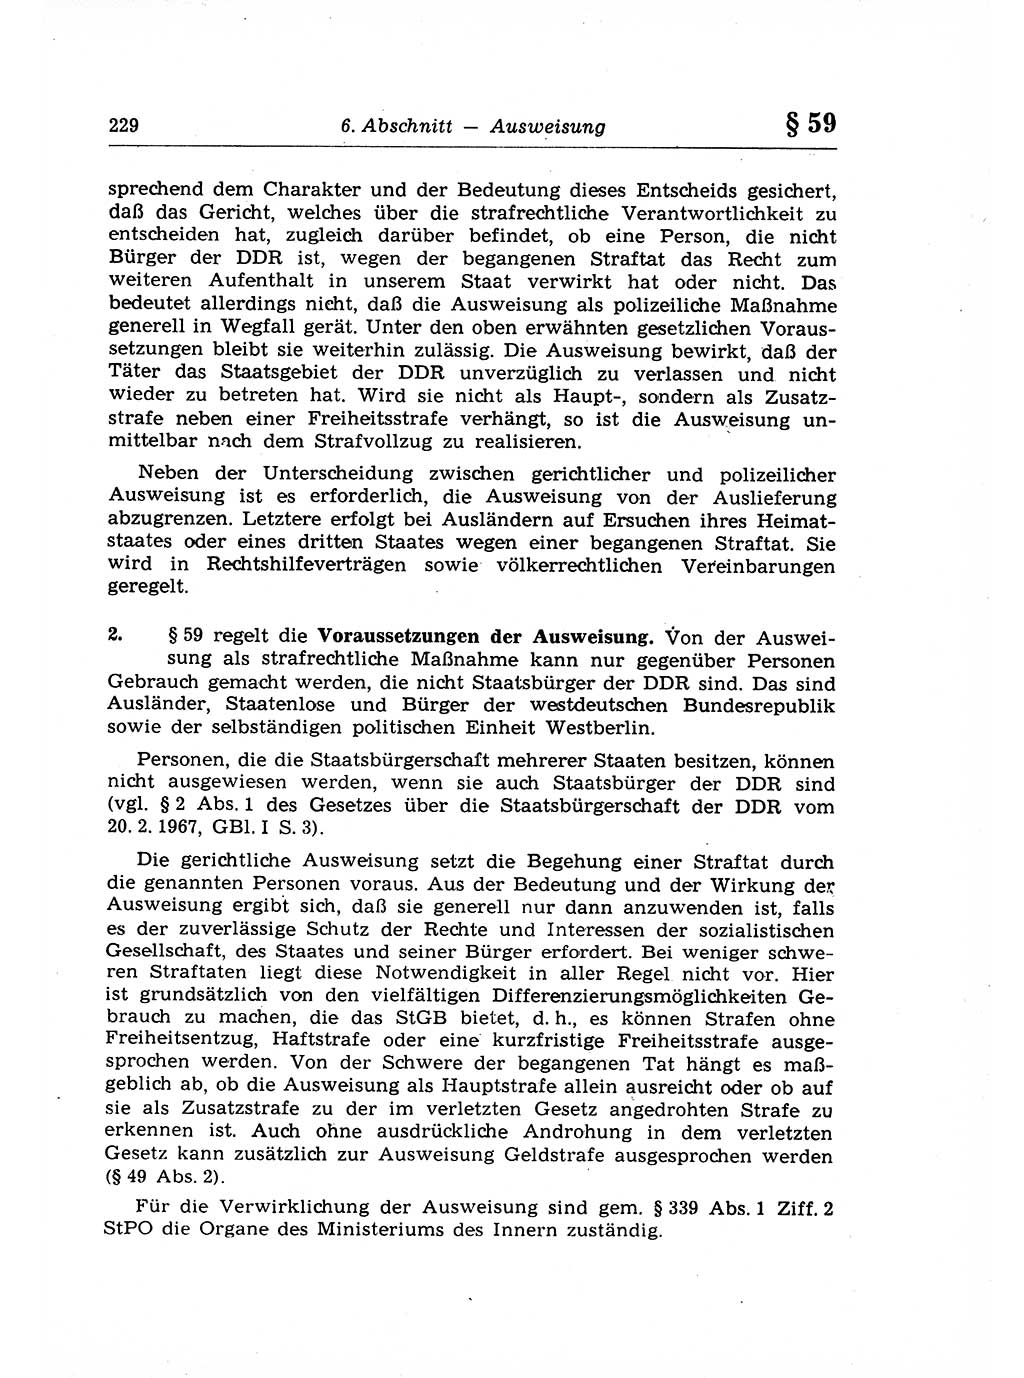 Strafrecht der Deutschen Demokratischen Republik (DDR), Lehrkommentar zum Strafgesetzbuch (StGB), Allgemeiner Teil 1969, Seite 229 (Strafr. DDR Lehrkomm. StGB AT 1969, S. 229)